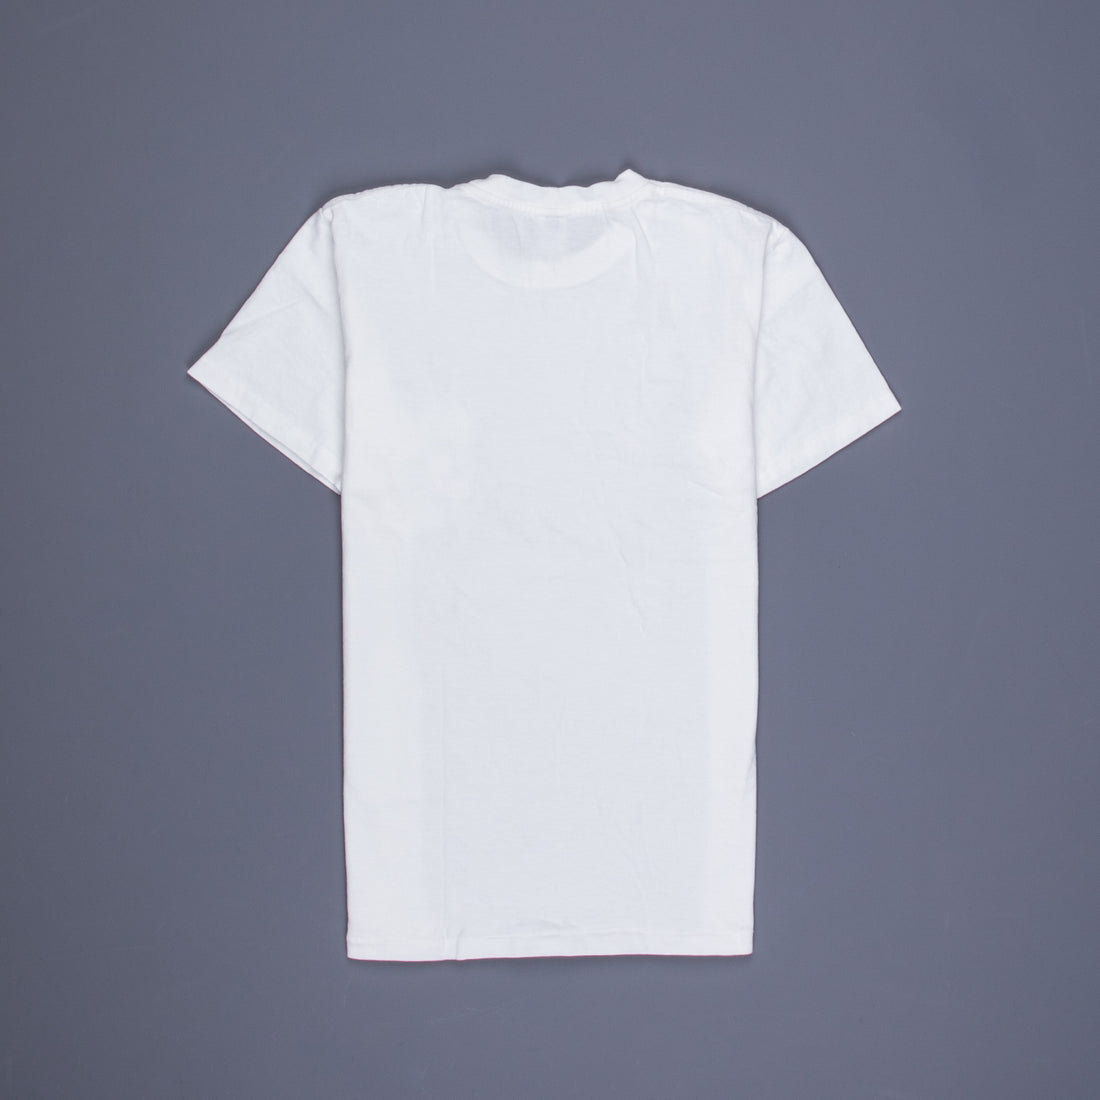 plain white t shirts